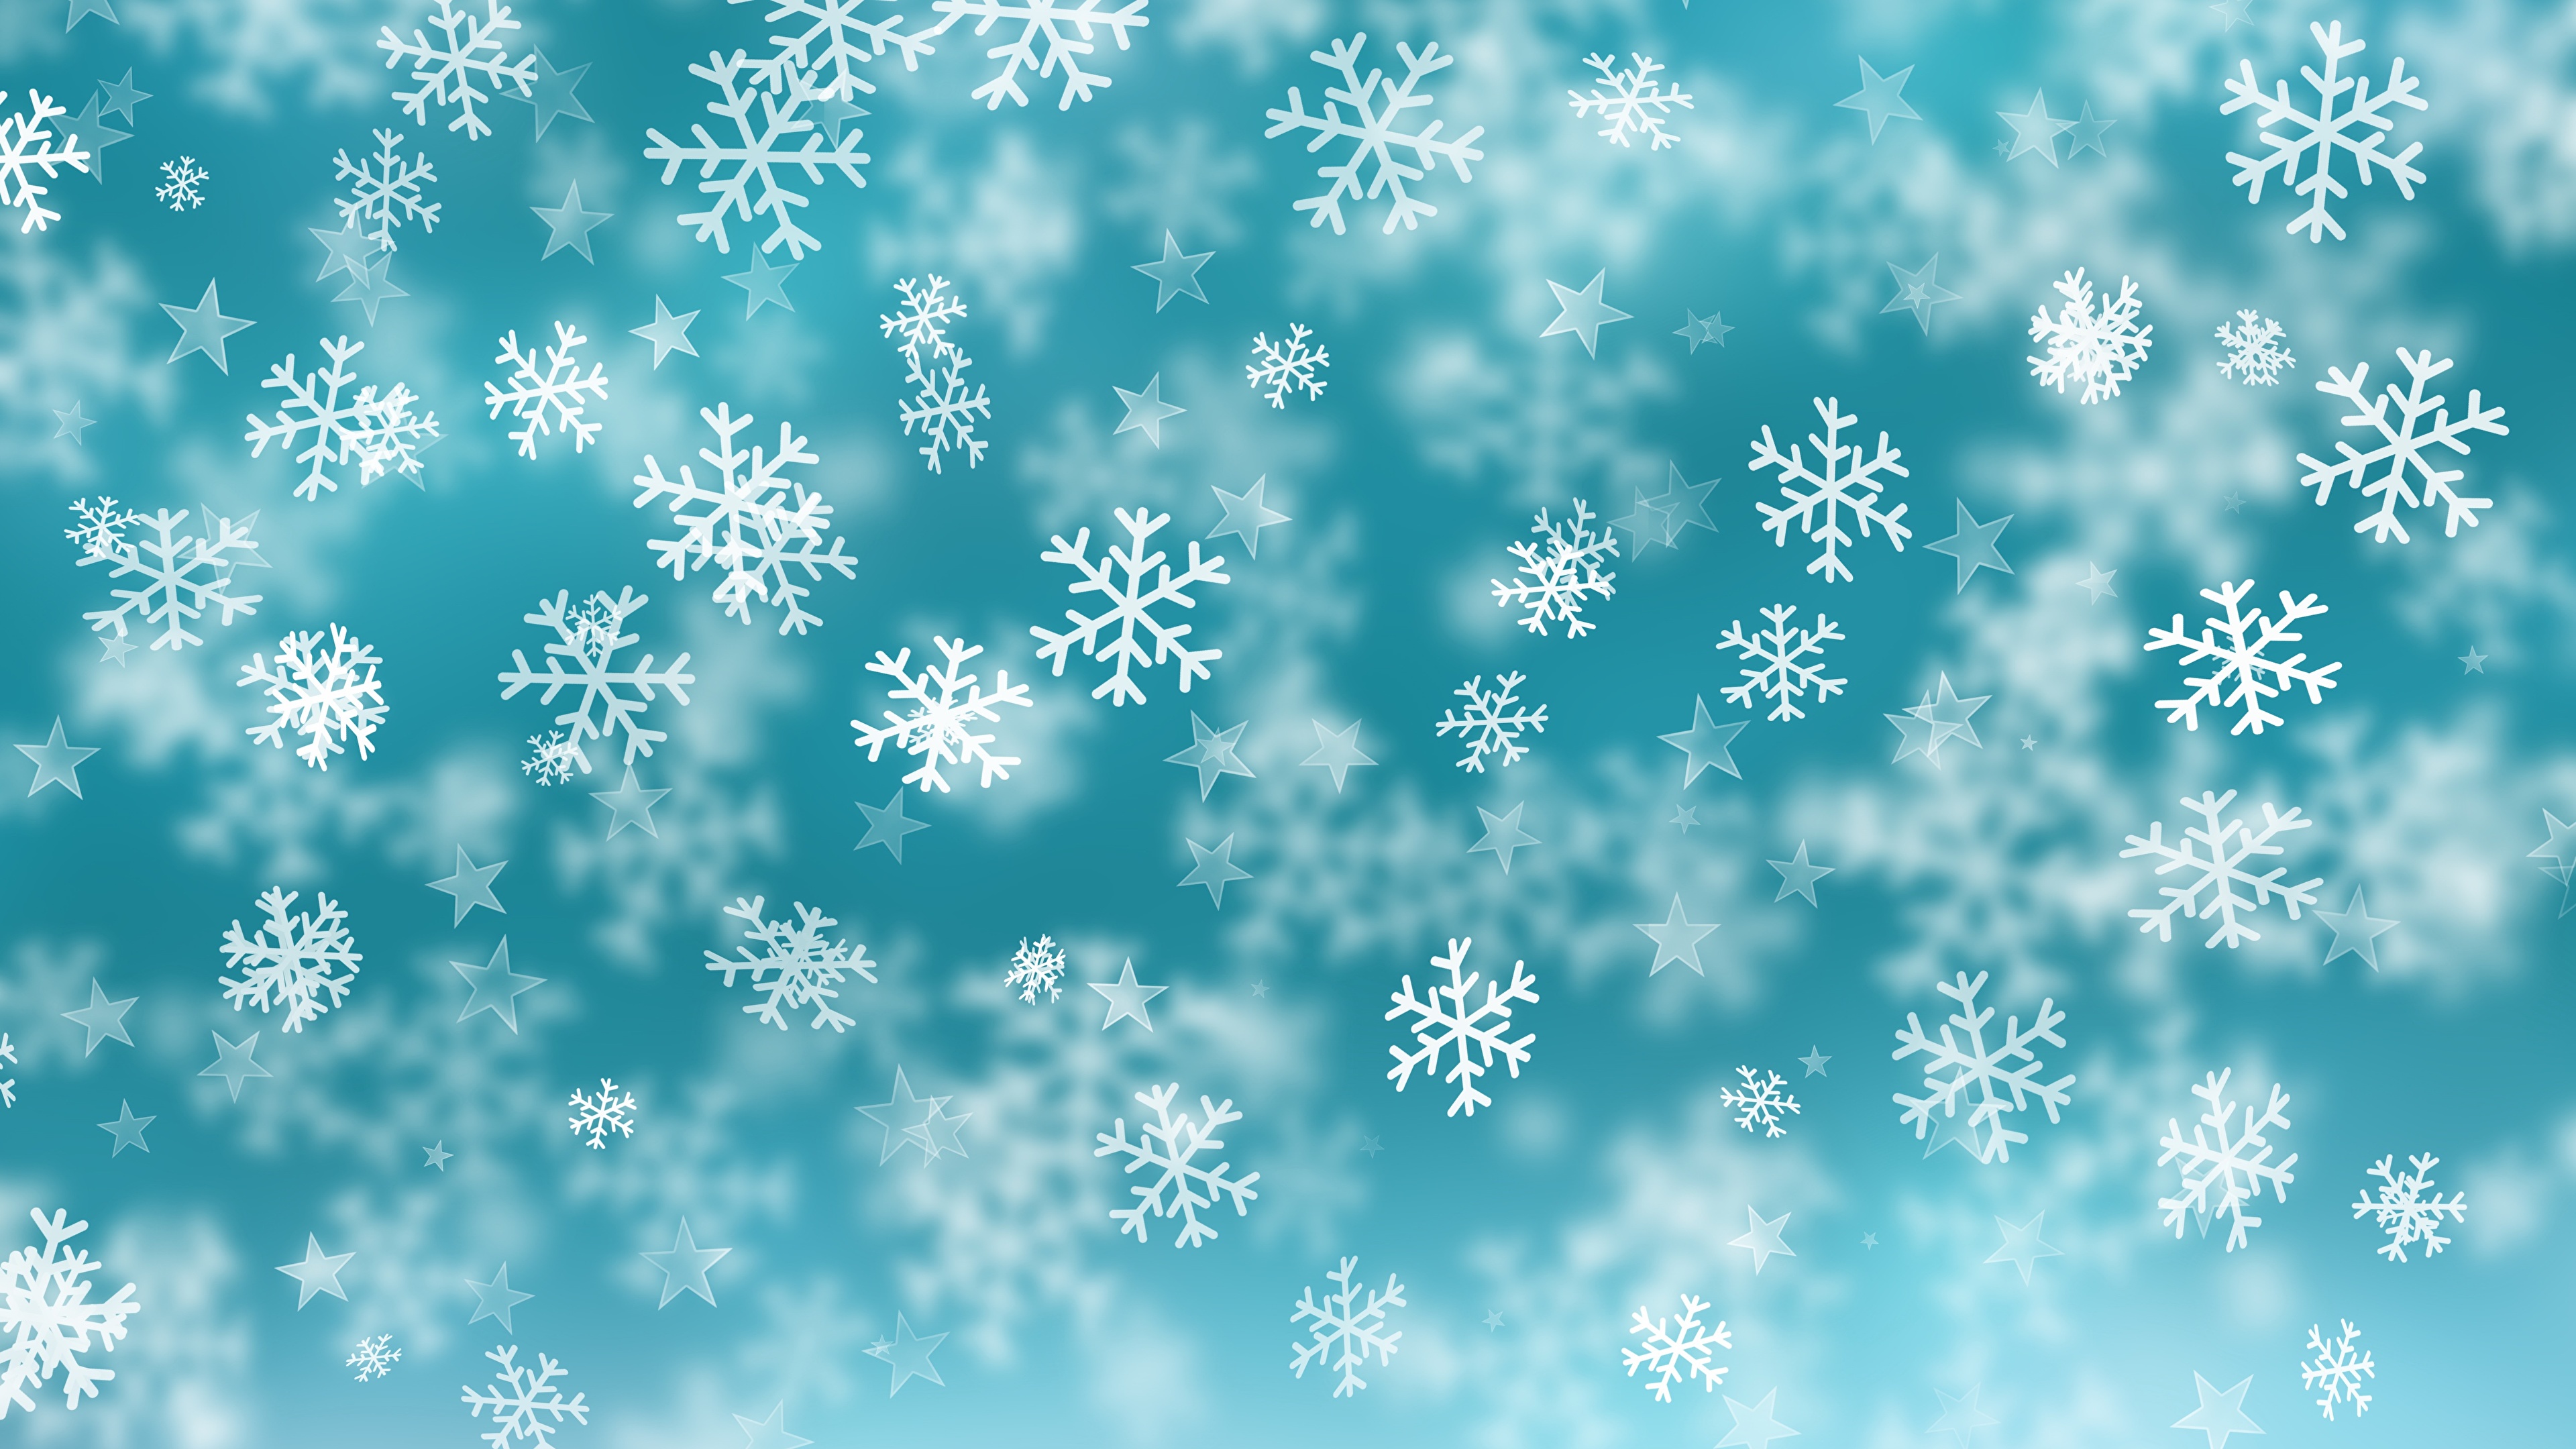 壁紙 3840x2160 テクスチャー 新年 雪の結晶 ダウンロード 写真